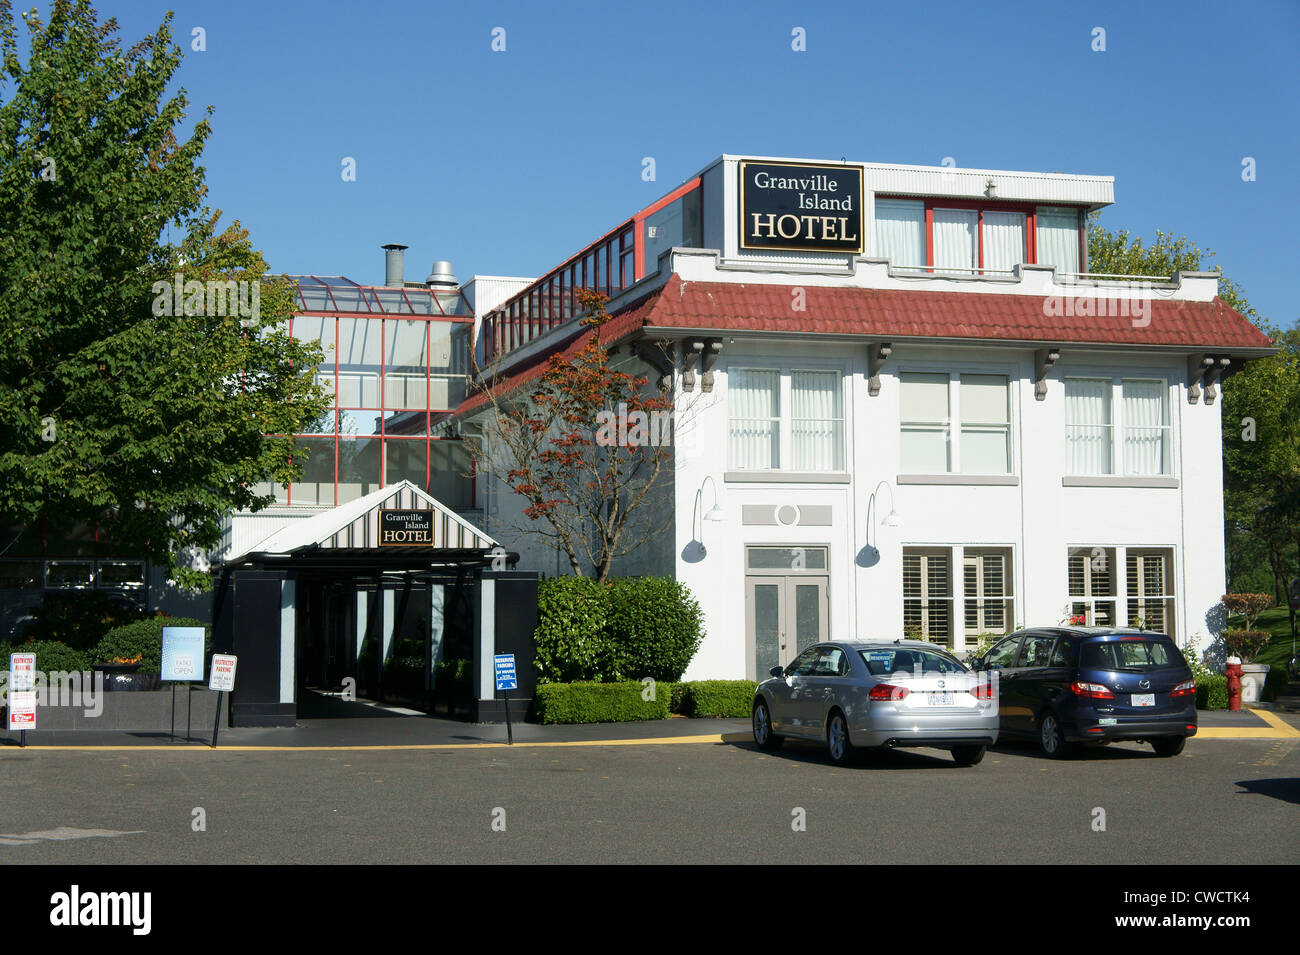 Granville Island Hotel, Vancouver, British Columbia, Canada Foto Stock